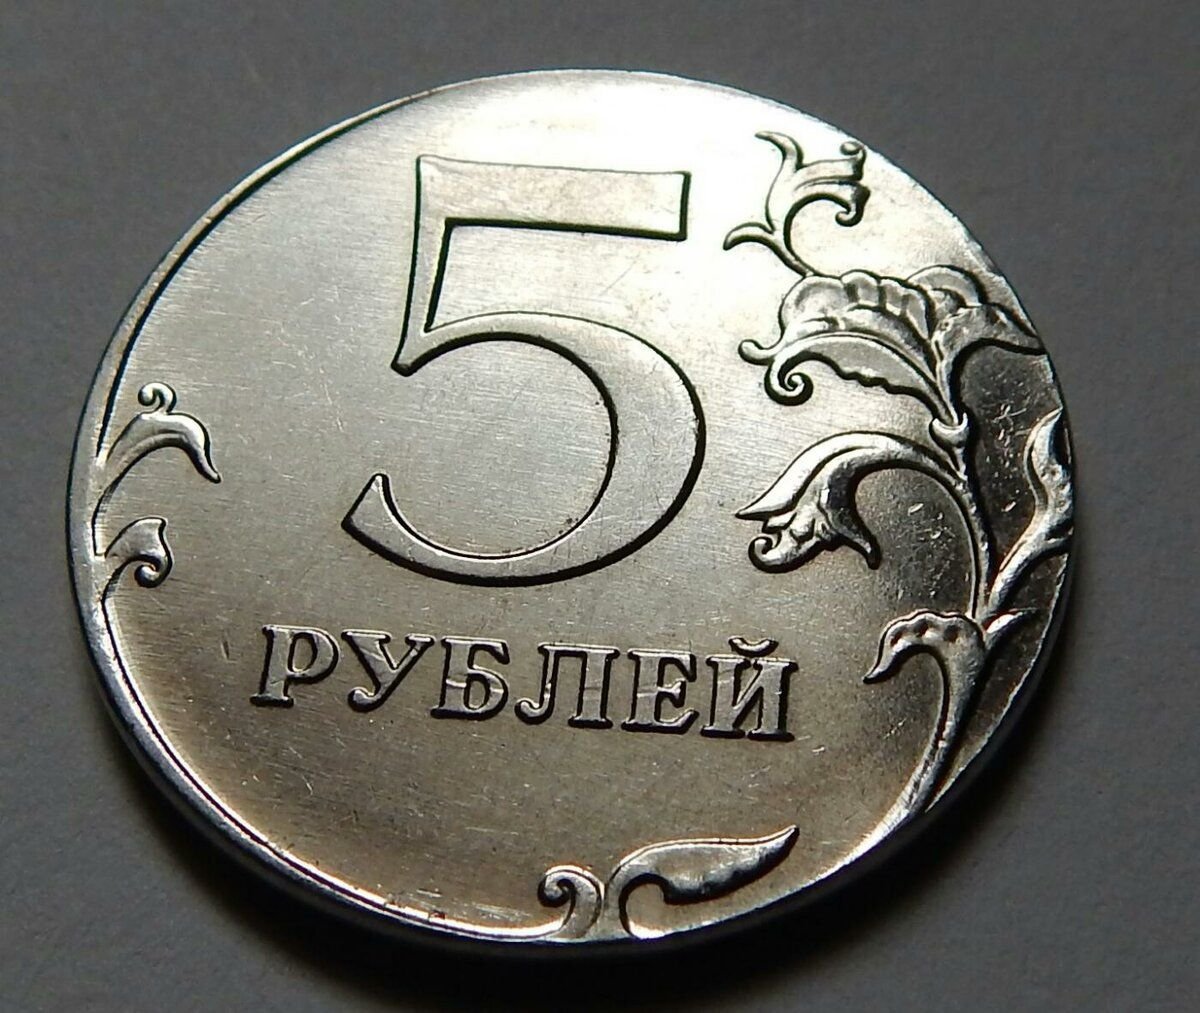 5 рублей в граммах. Пять рублей. Монета 5 рублей. Монетка 5 рублей. Пятирублевая монета.